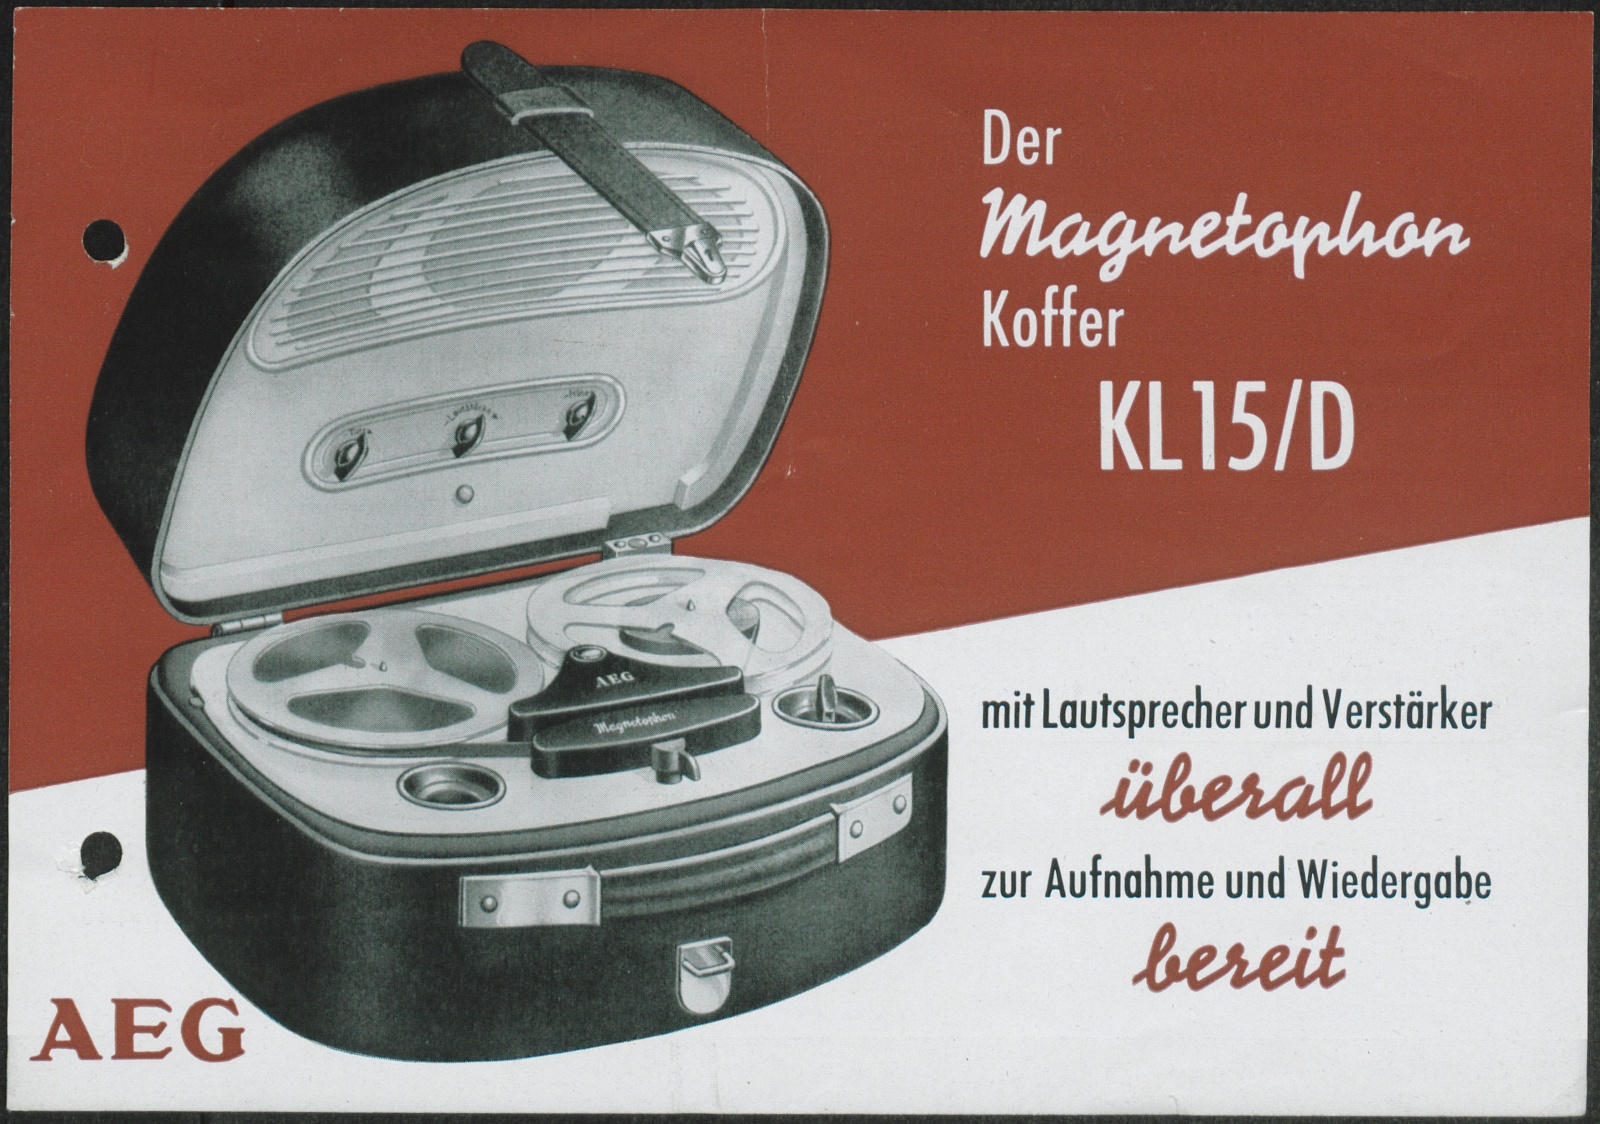 Werbeprospekt: Der Magnetophon Koffer KL15/D mit Lautsprecher und Verstärker überall zur Aufnahme und Wiedergabe bereit (Stiftung Deutsches Technikmuseum Berlin CC0)